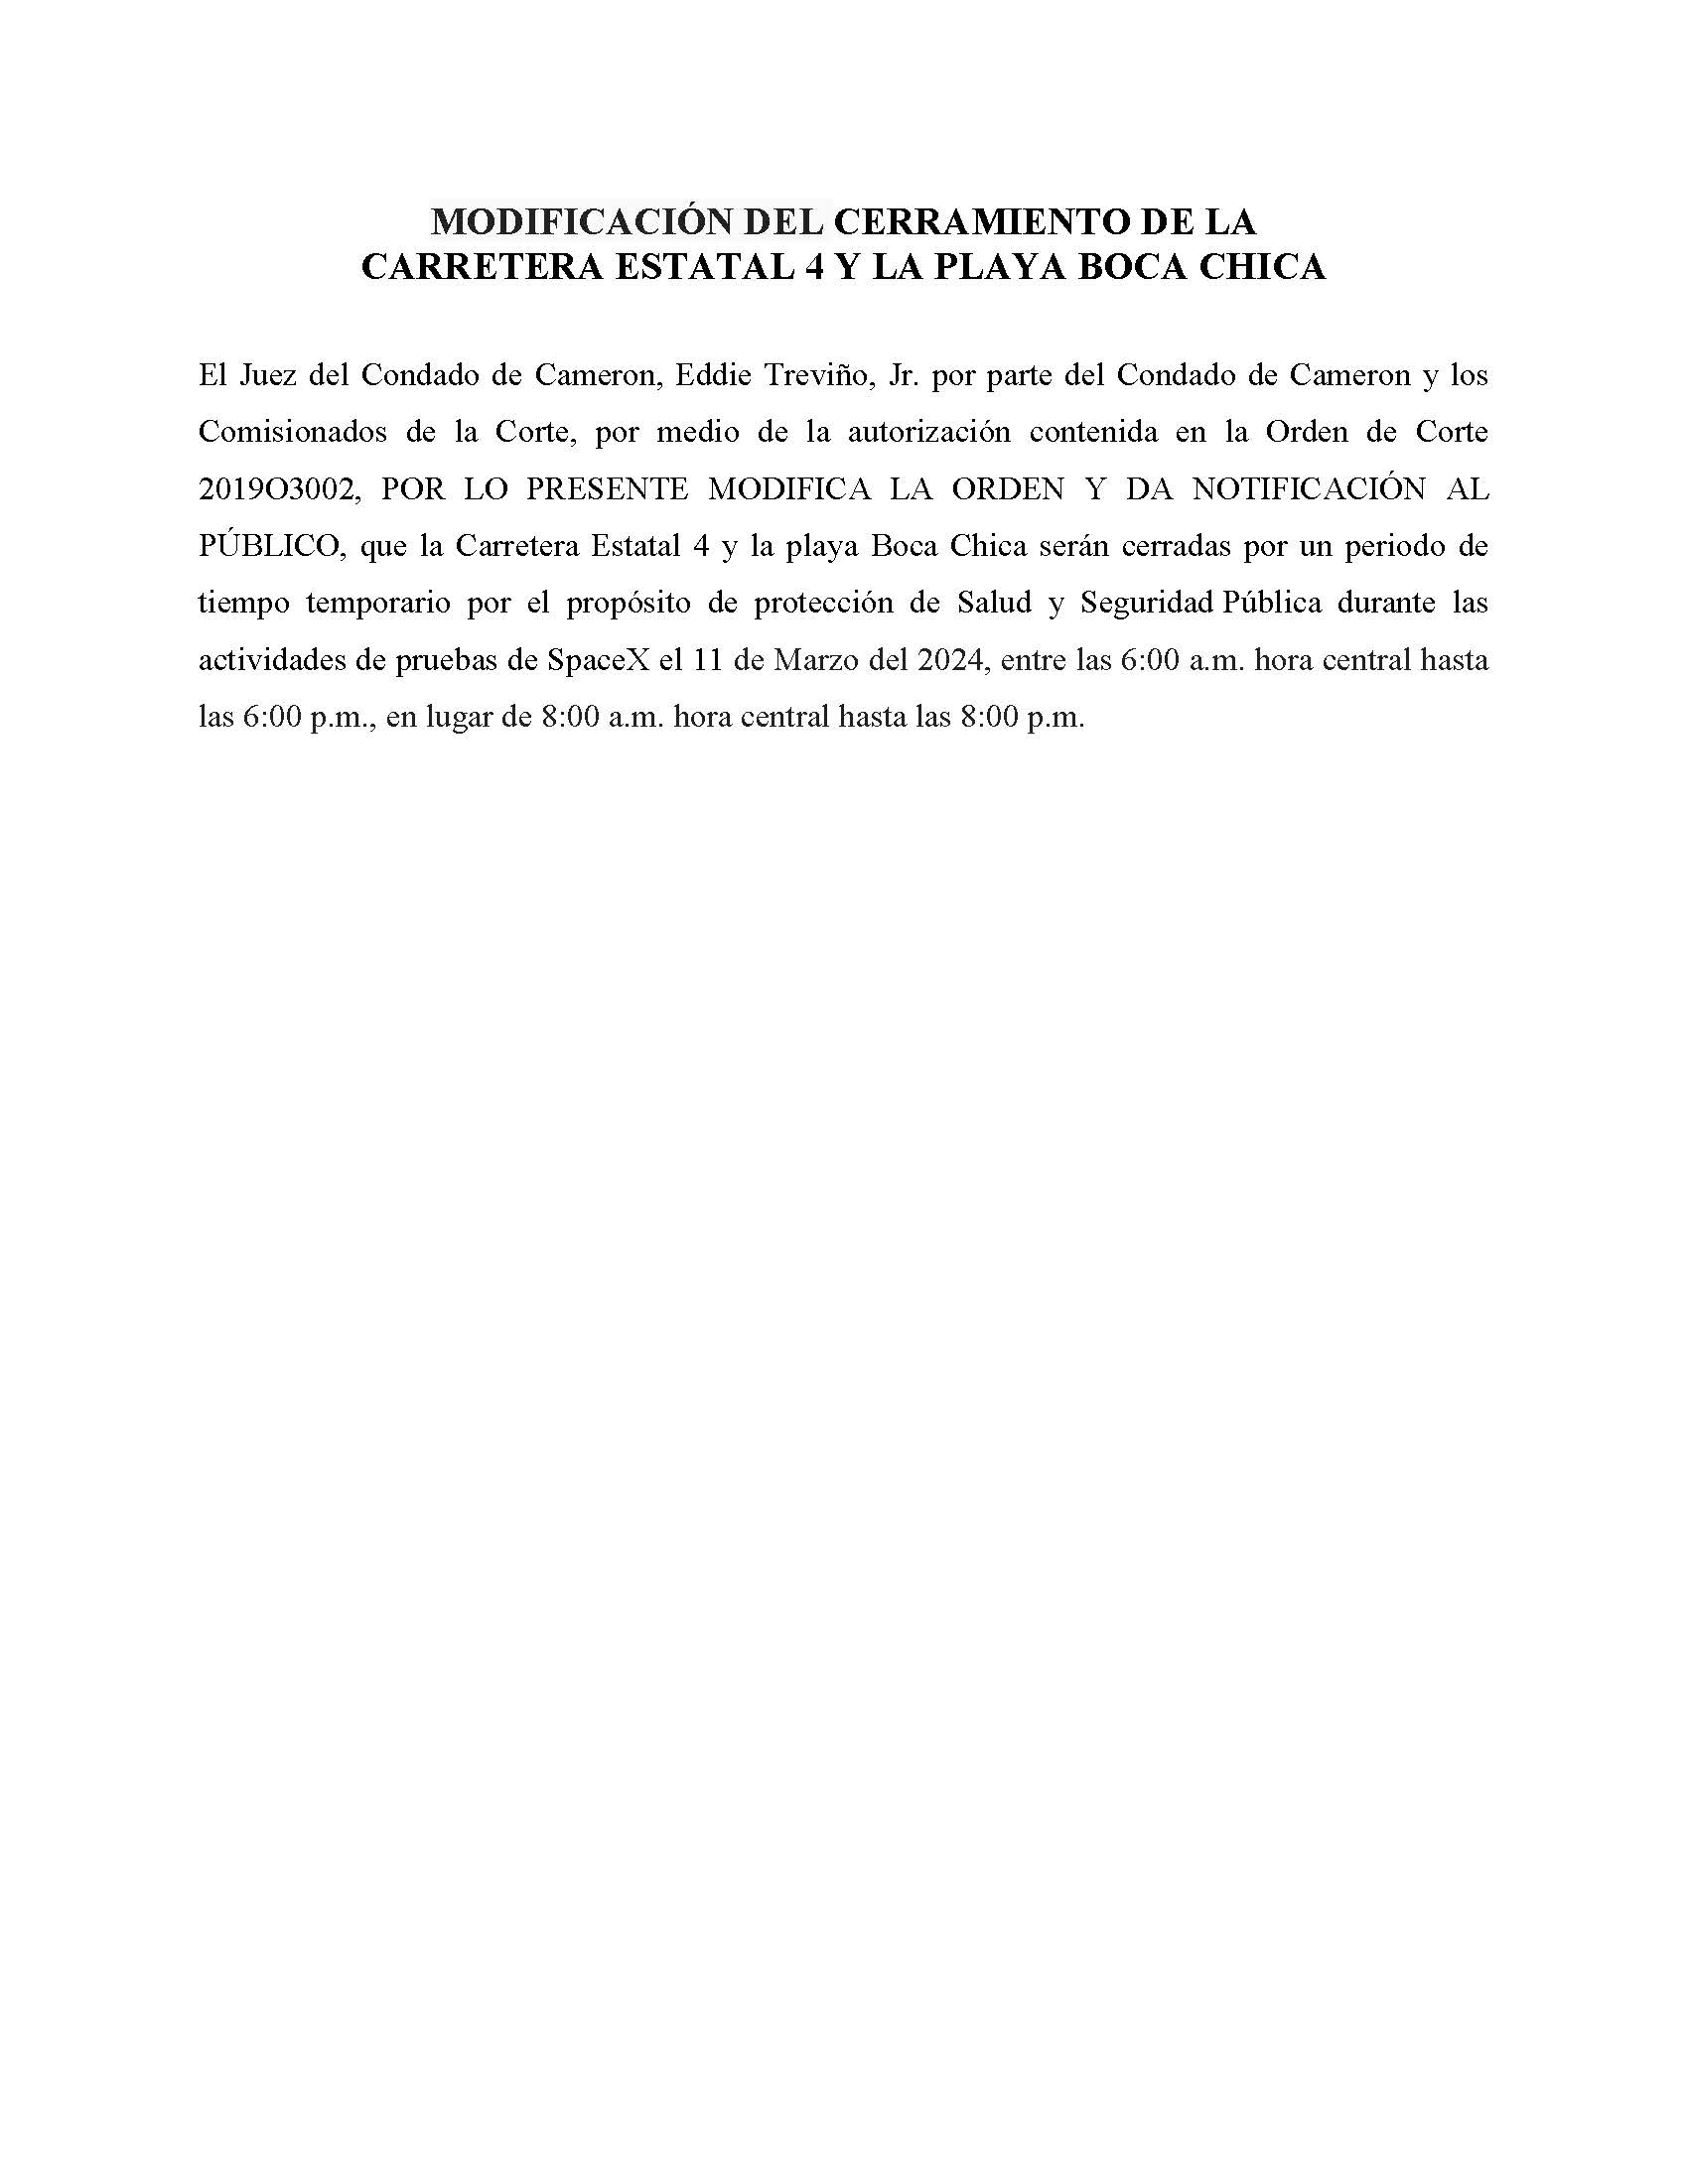 MODIFICADA.ORDER .CLOSURE OF HIGHWAY 4 Y LA PLAYA BOCA CHICA.SPANISH.03.11.2024